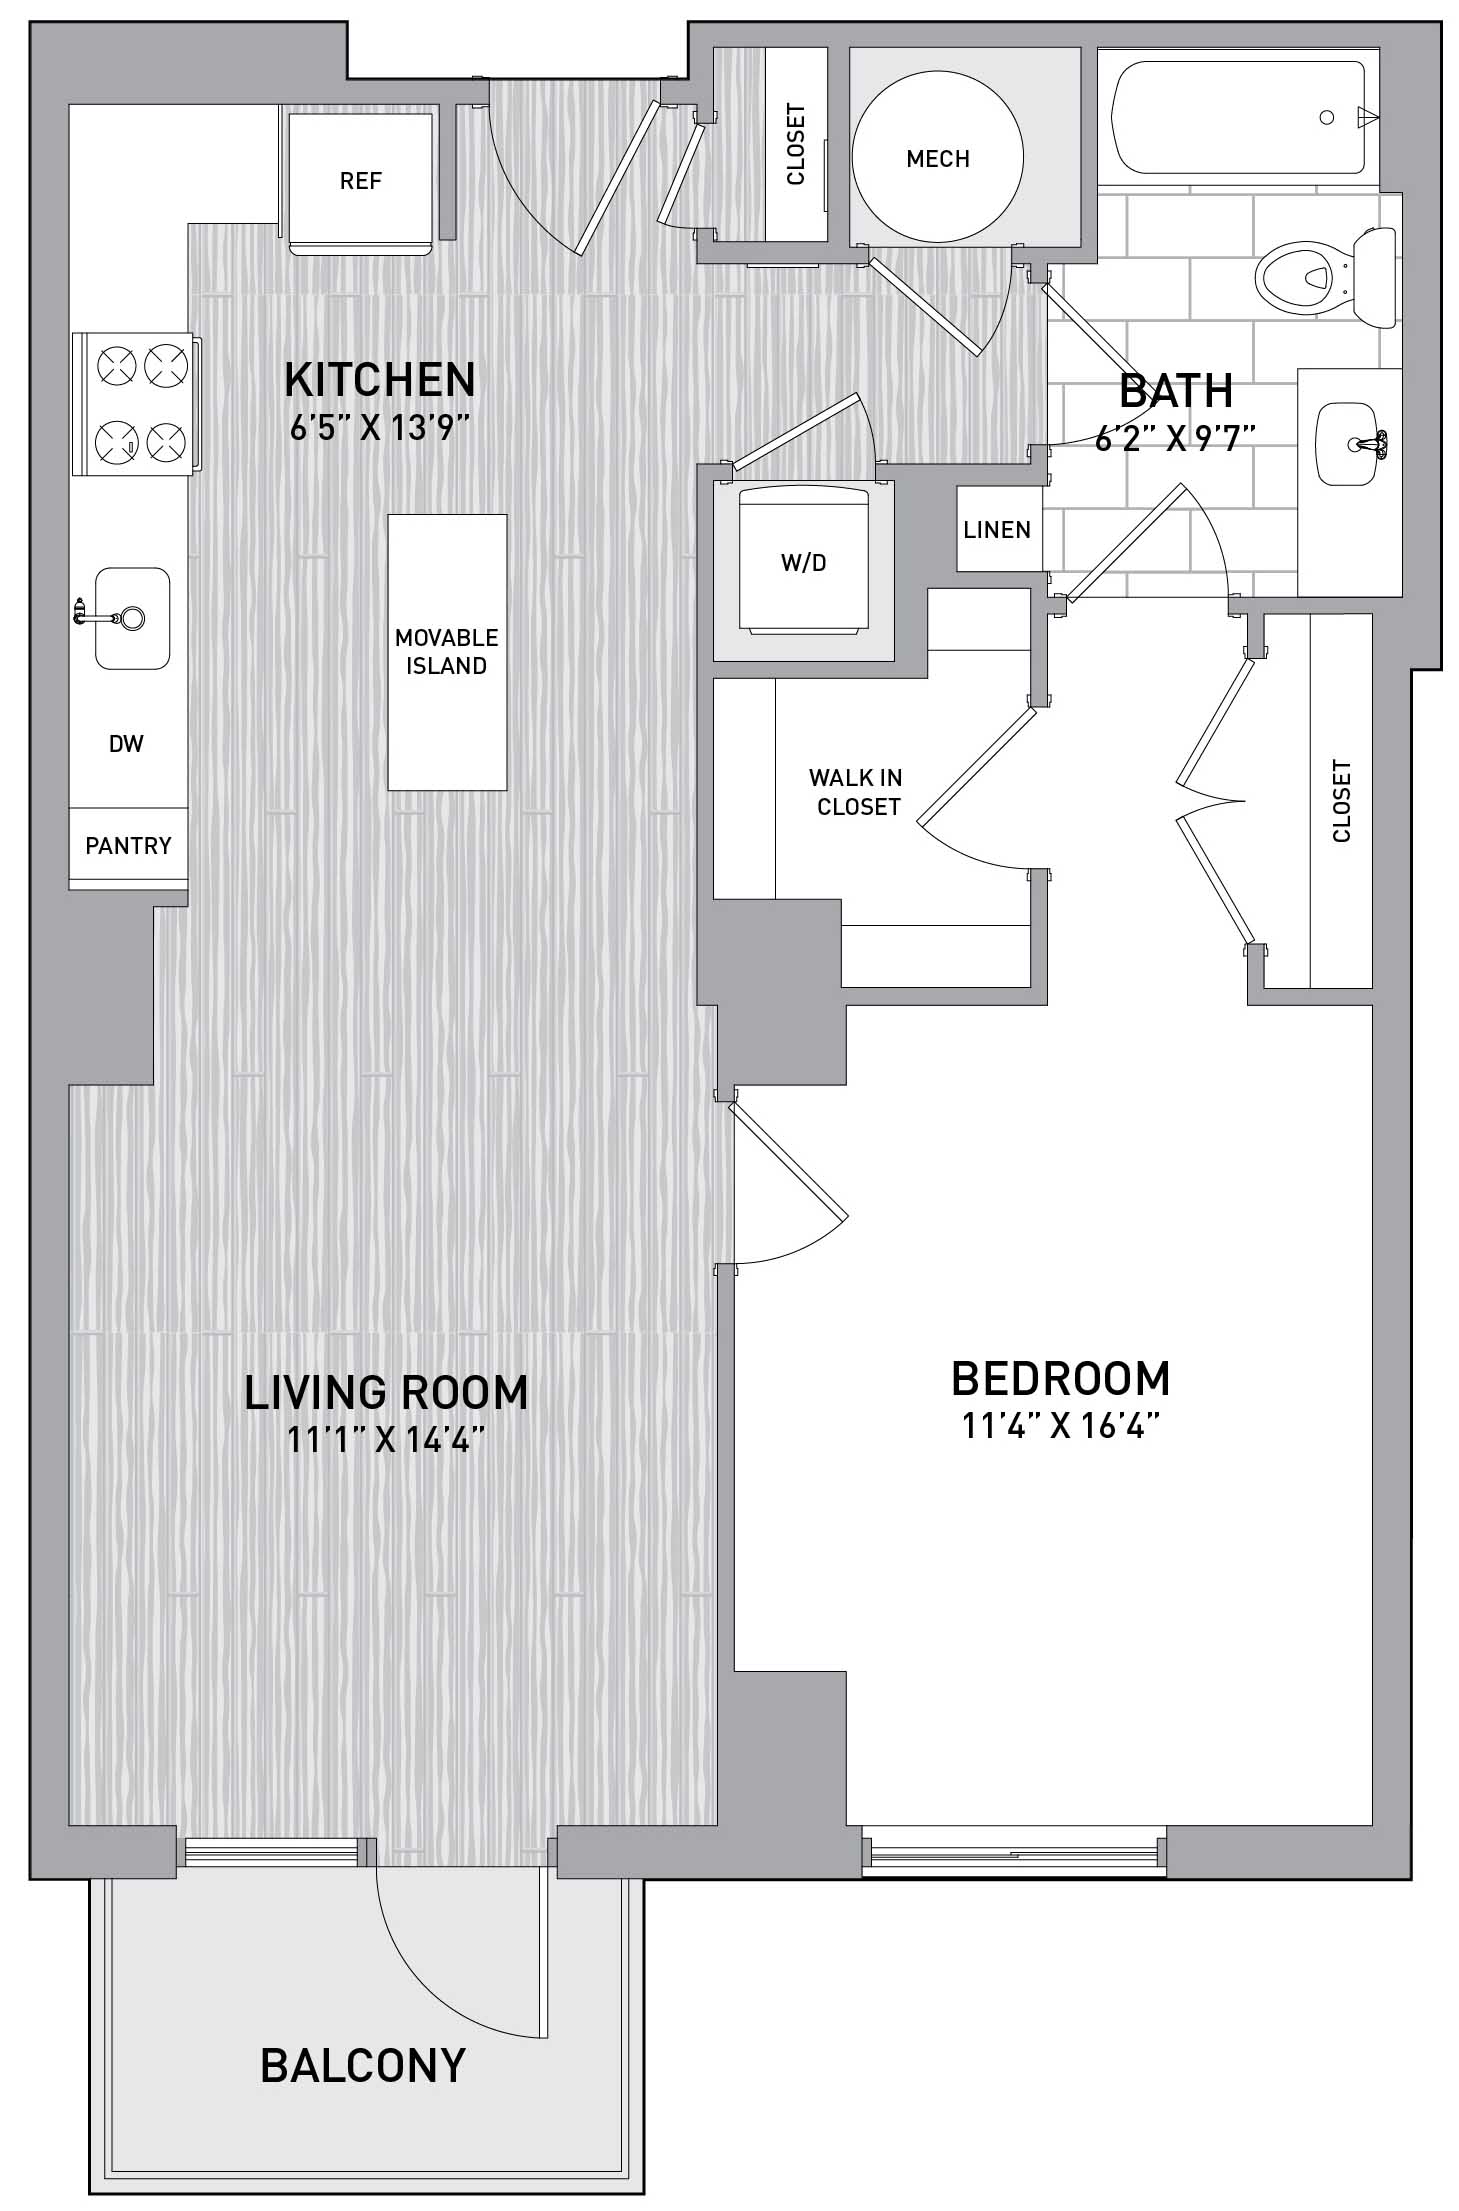 Floorplan Image of unit 151-0410